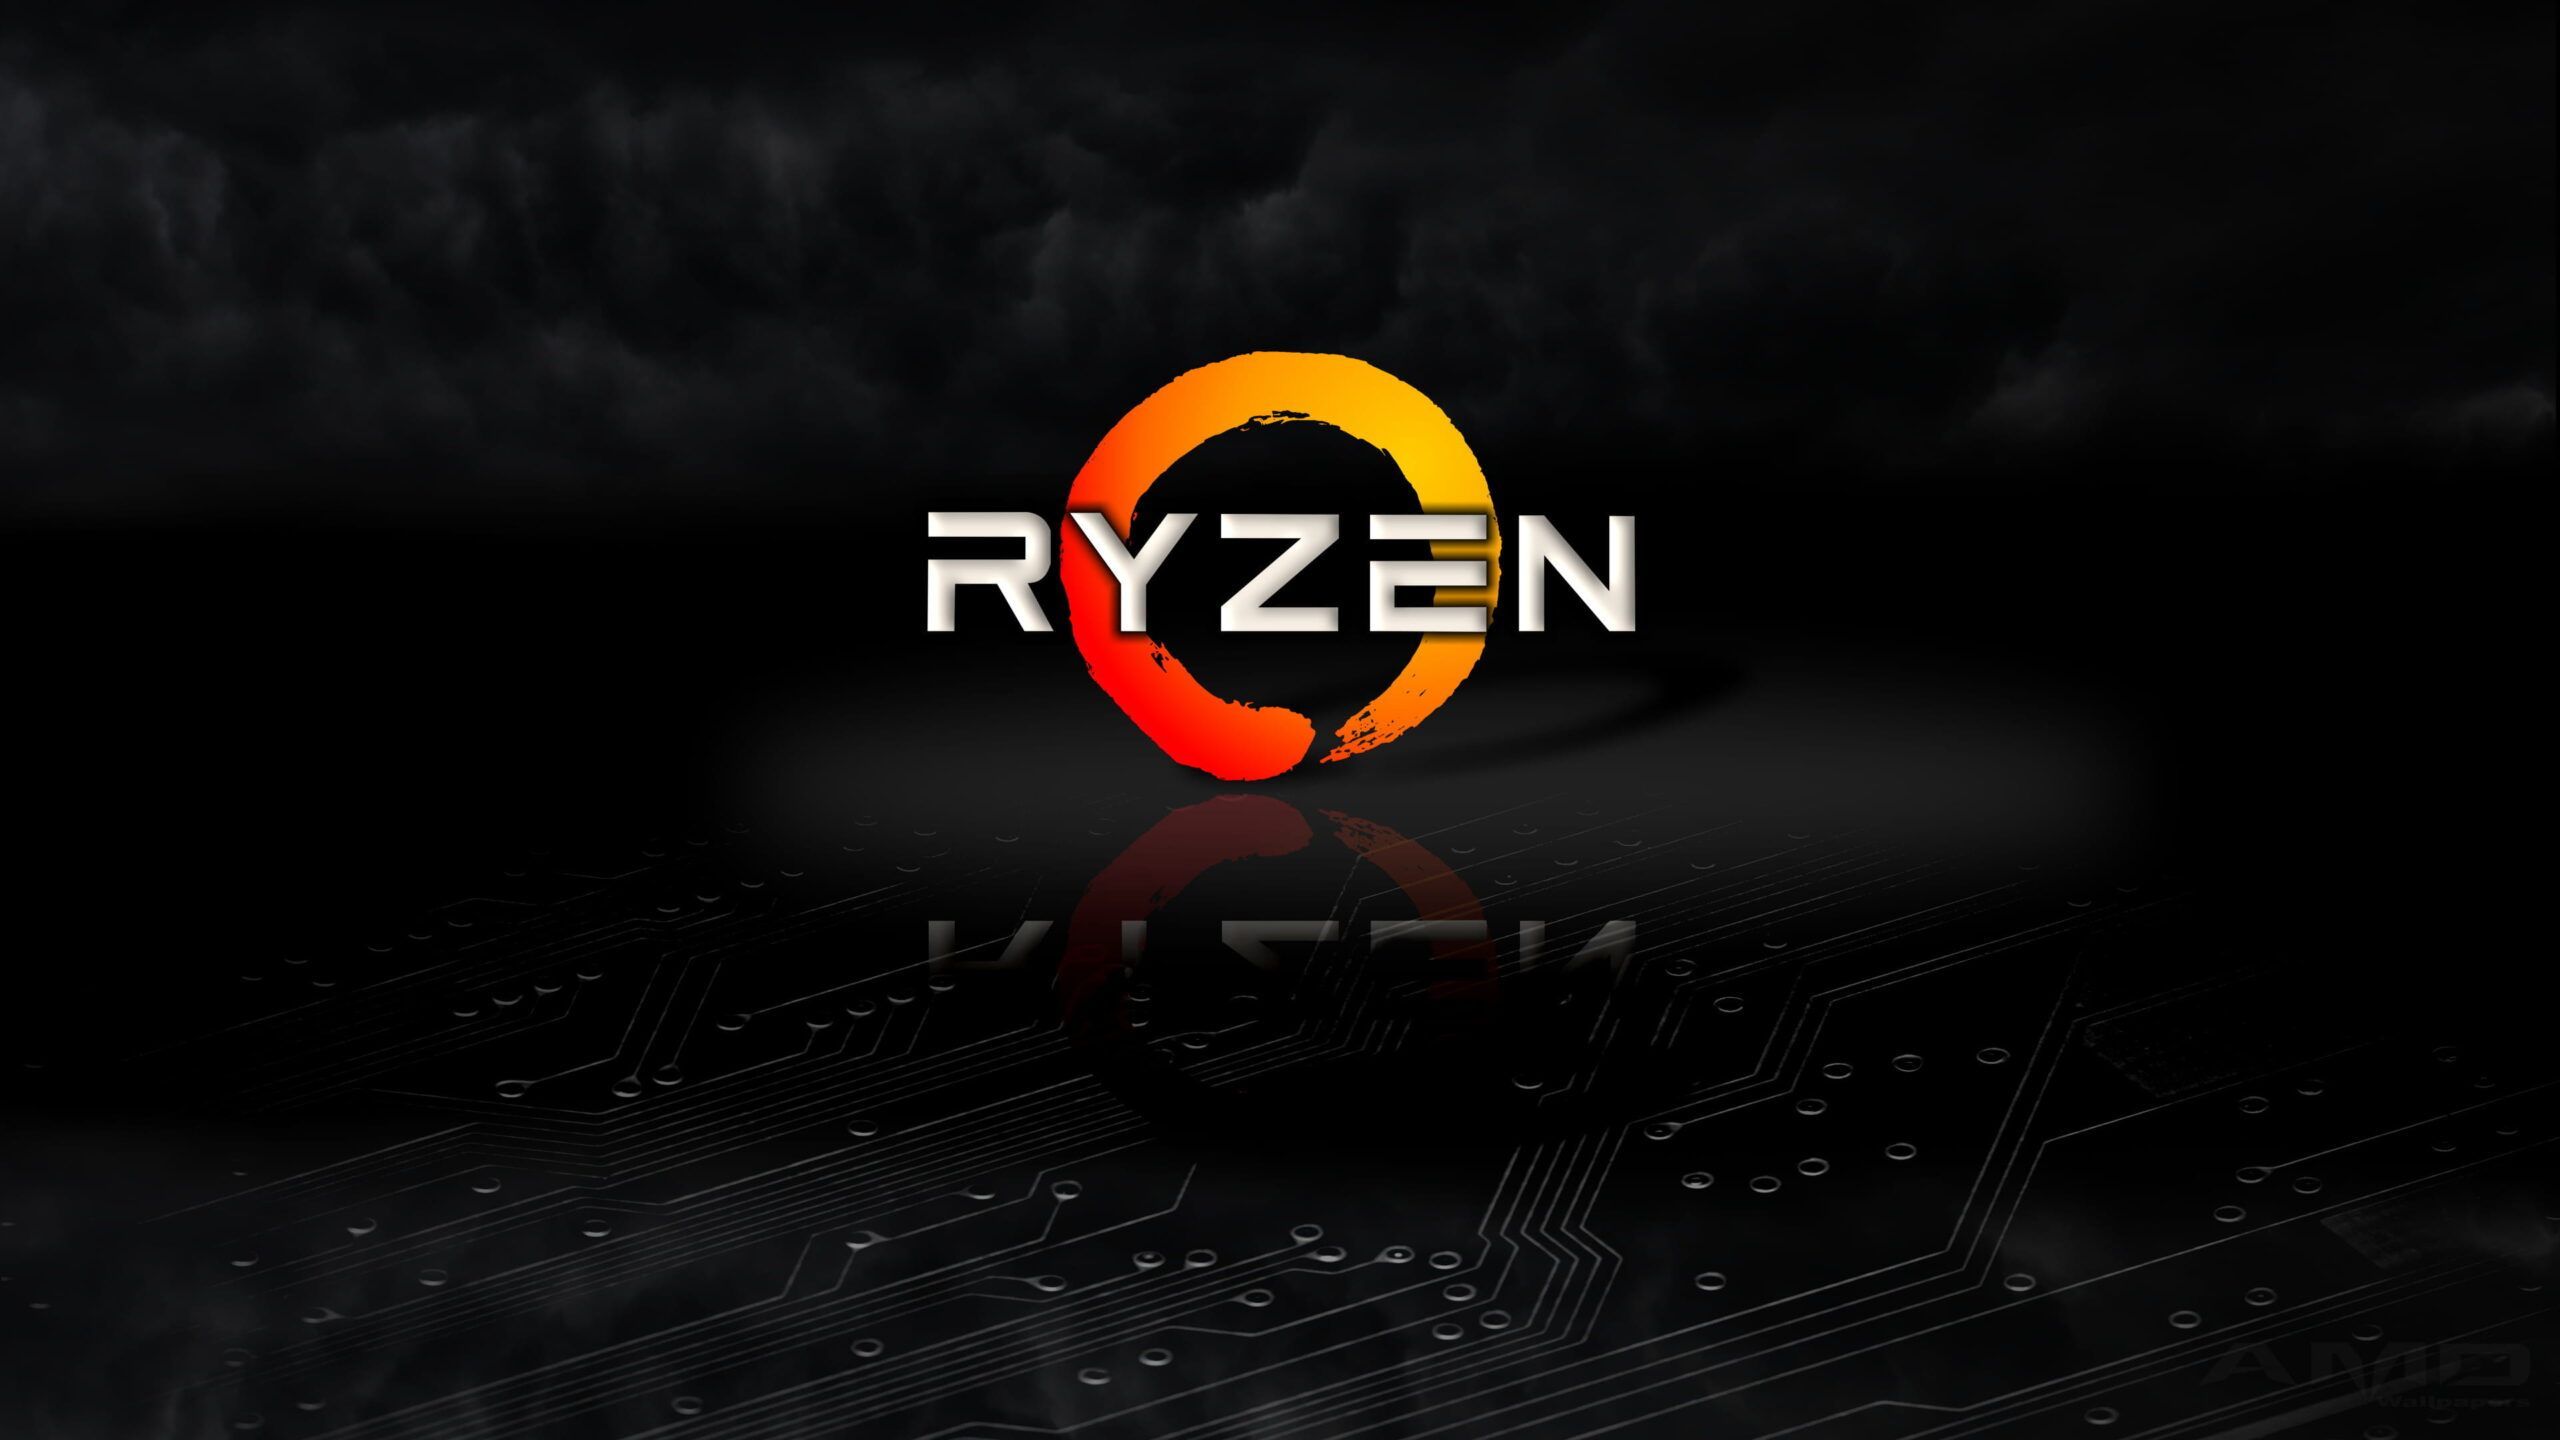 AMD Ryzen HD Desktop Wallpaper. Desktop wallpaper, HD desktop, Wallpaper